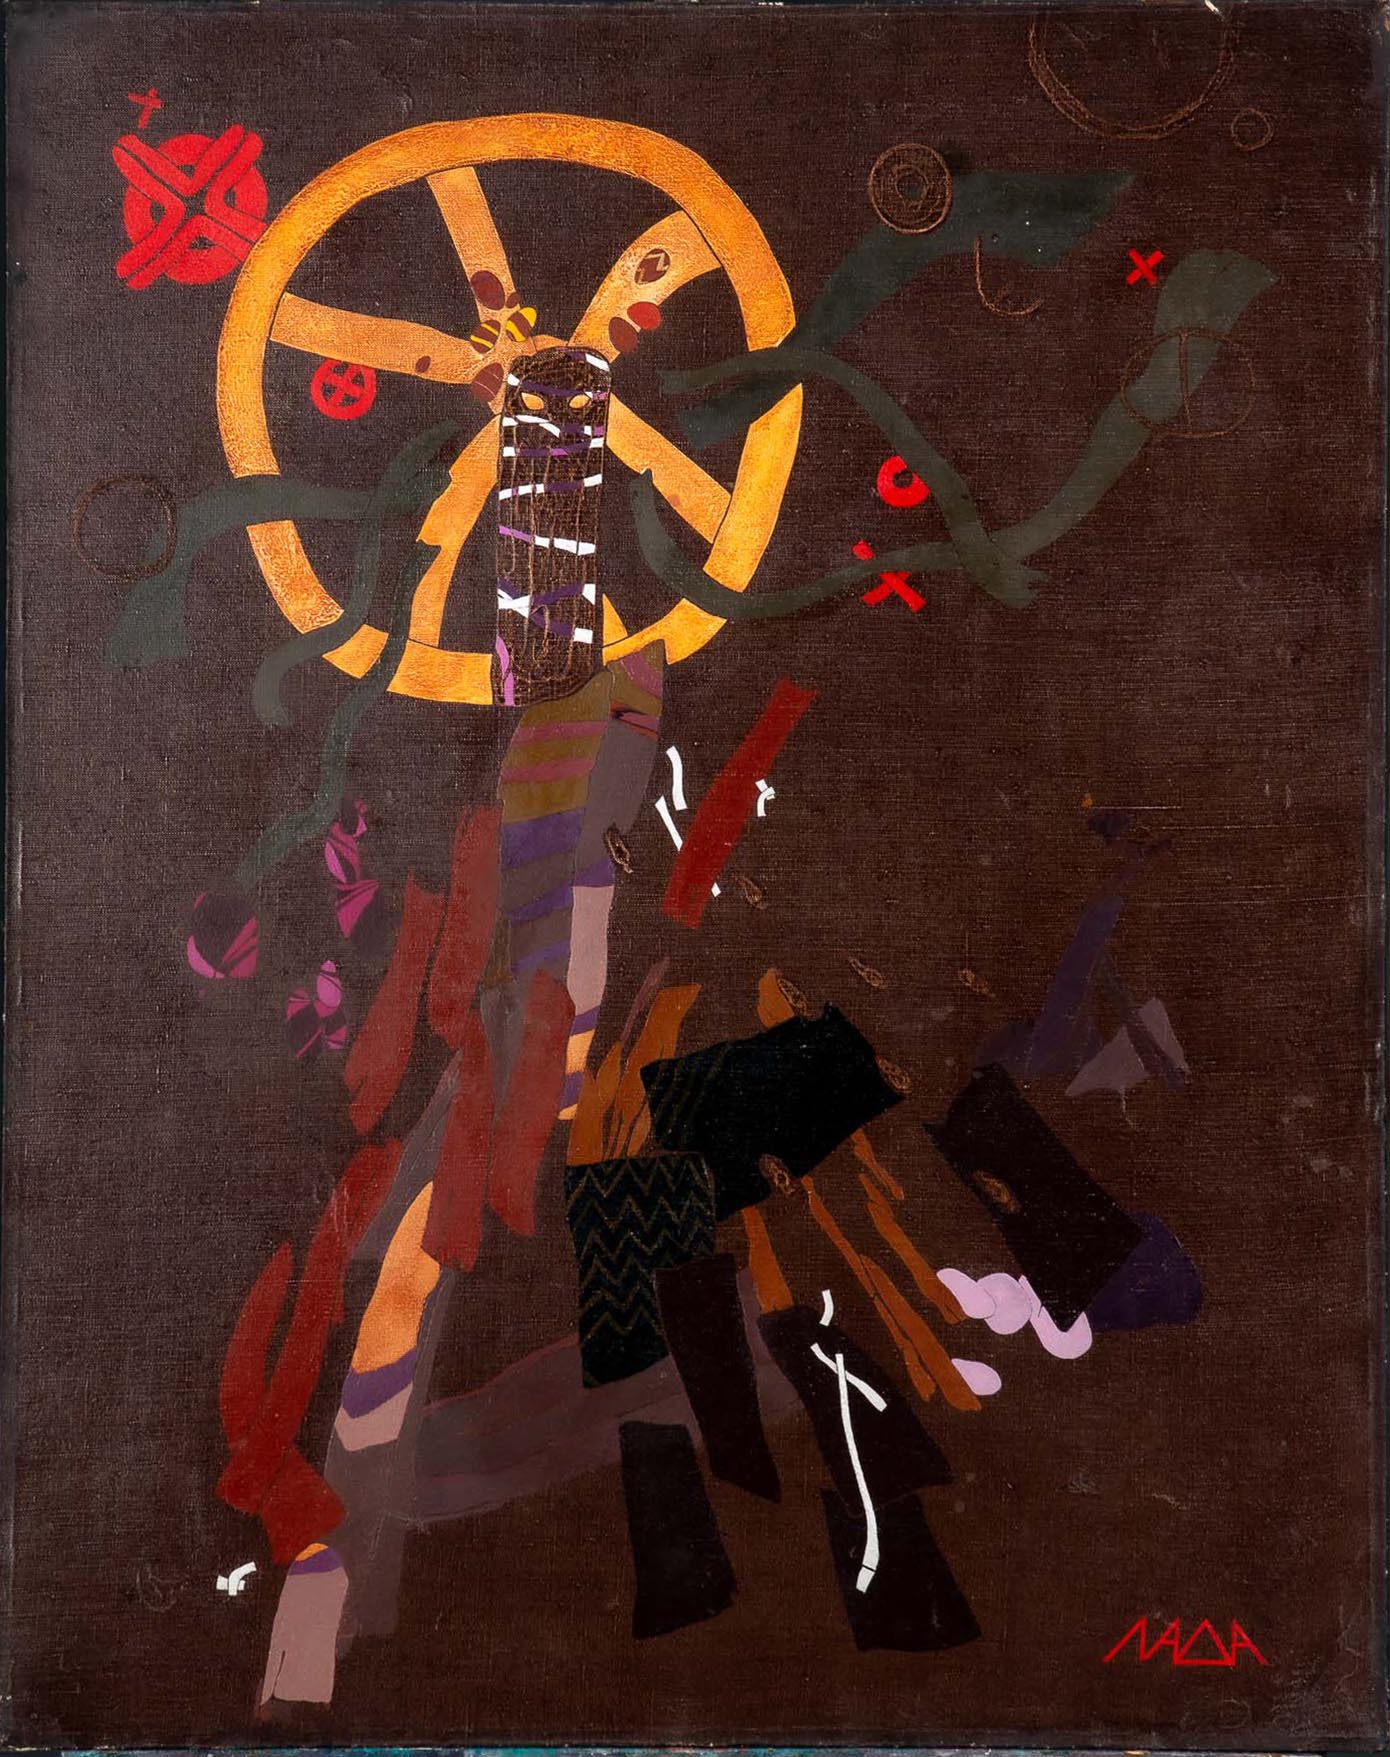 "Hexe", abstrakt symbolistisches Gemälde, Acryl auf Leinwand, der russischen Künstlerin LADA von 19